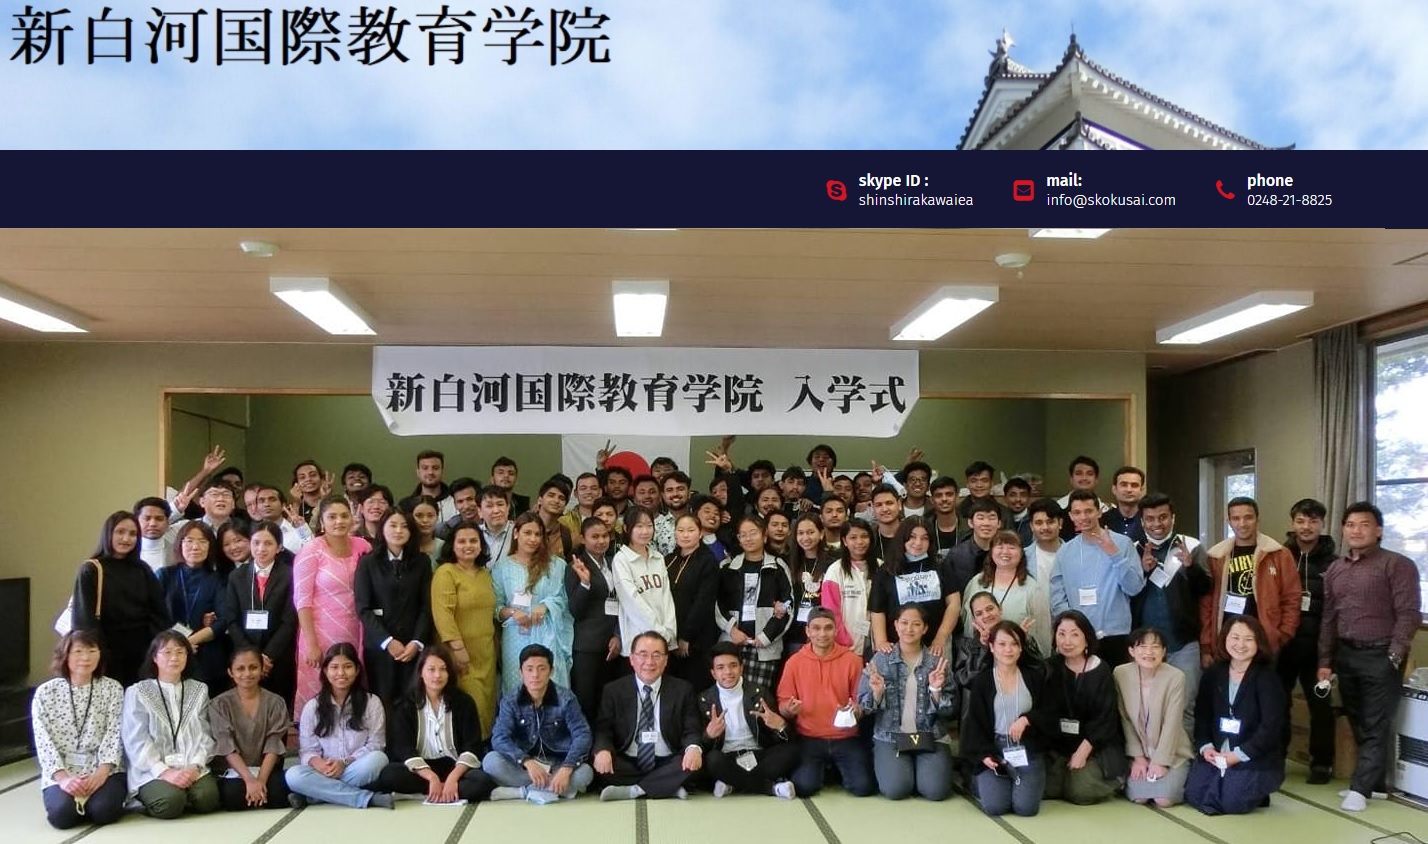 Học viện giáo dục quốc tế Shin Shirakawa 3 tiện ích